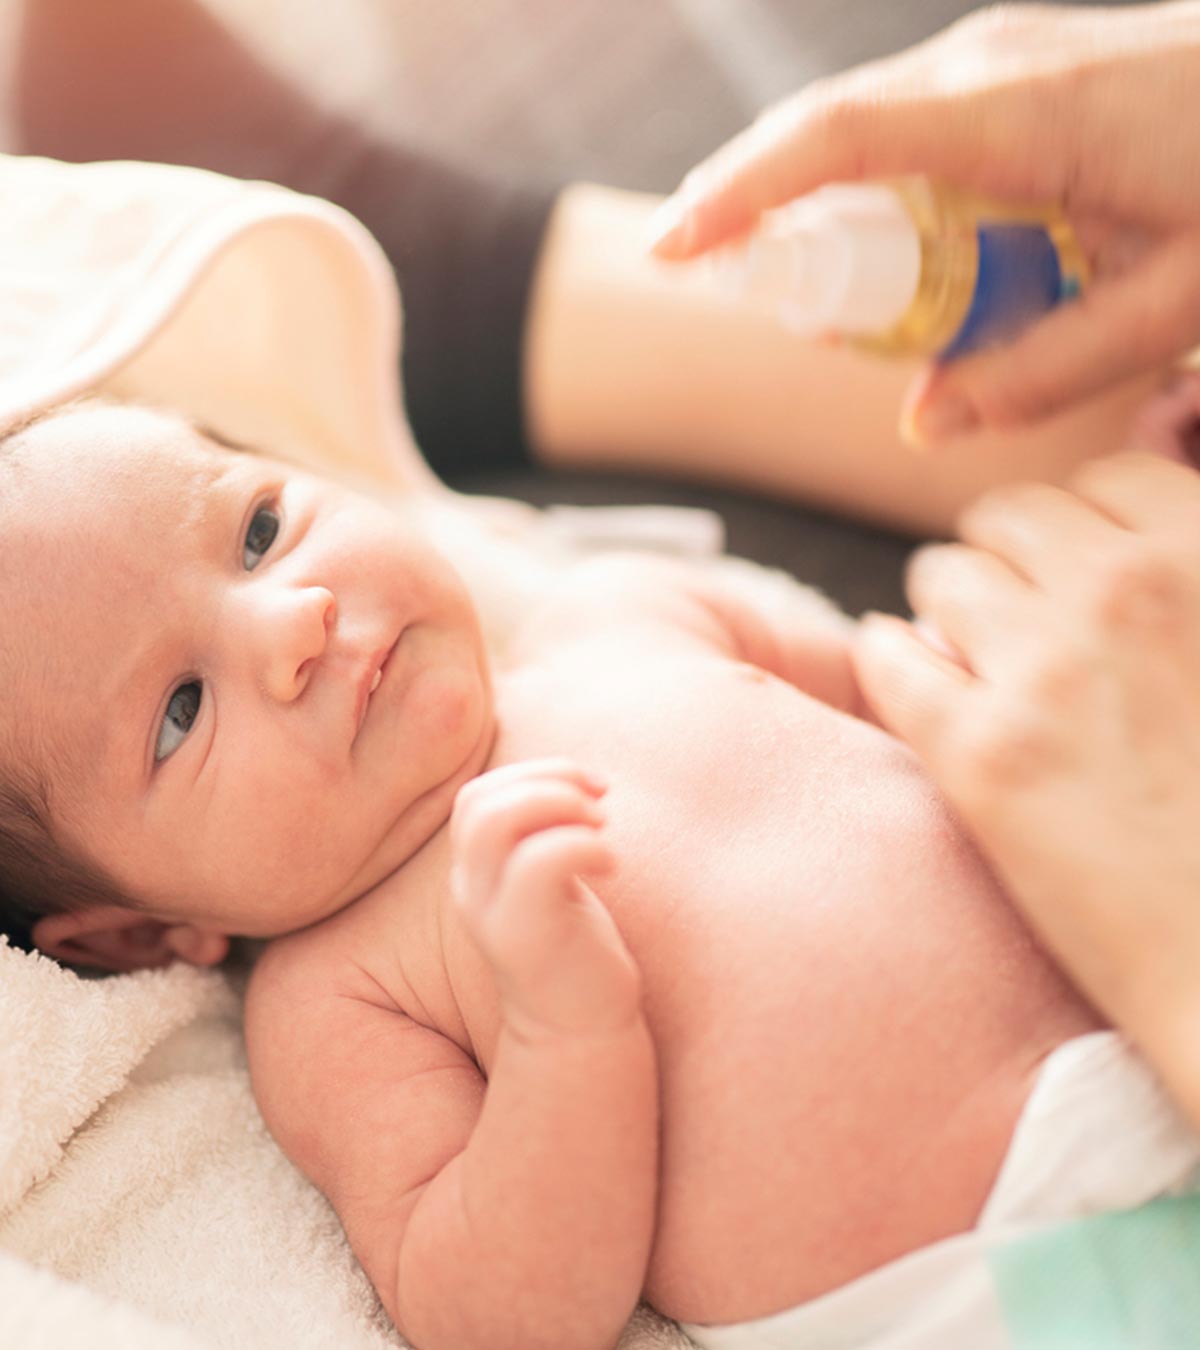 7重要啊ils For Teething Babies: Their Safety And Possible Uses